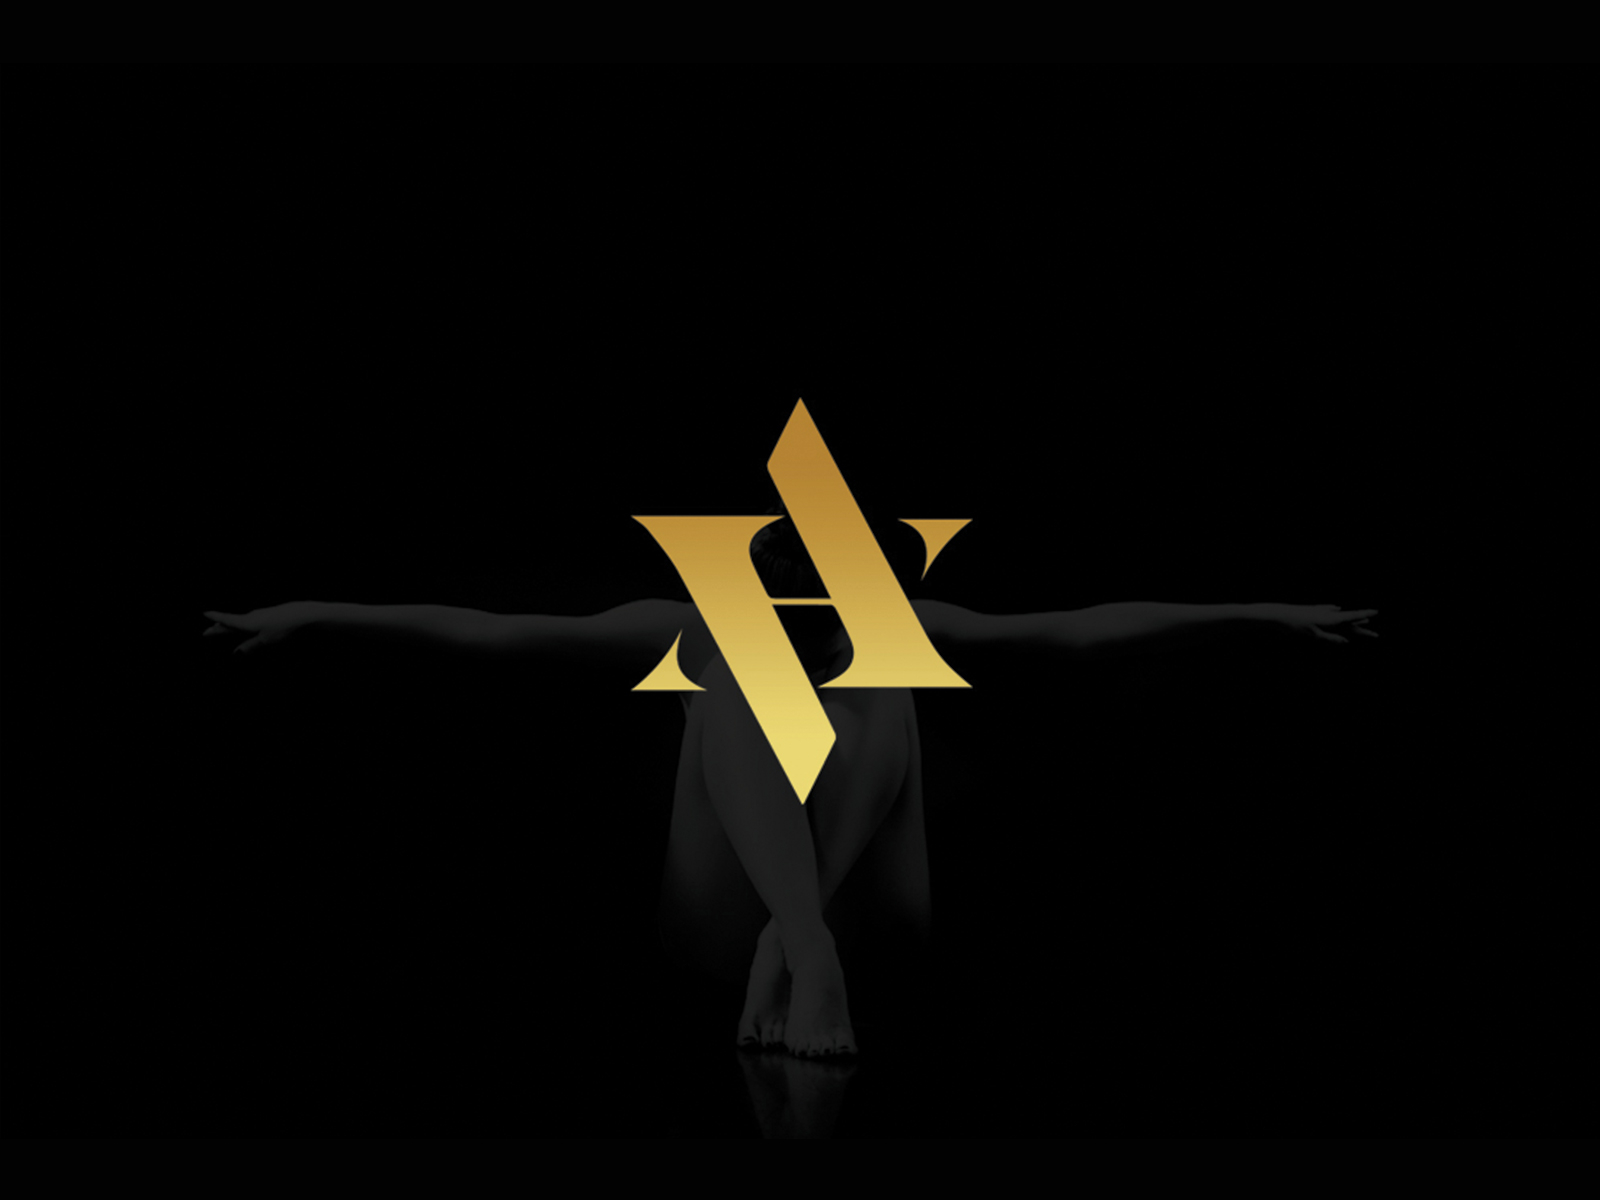 Av Logo Cliparts, Stock Vector and Royalty Free Av Logo Illustrations